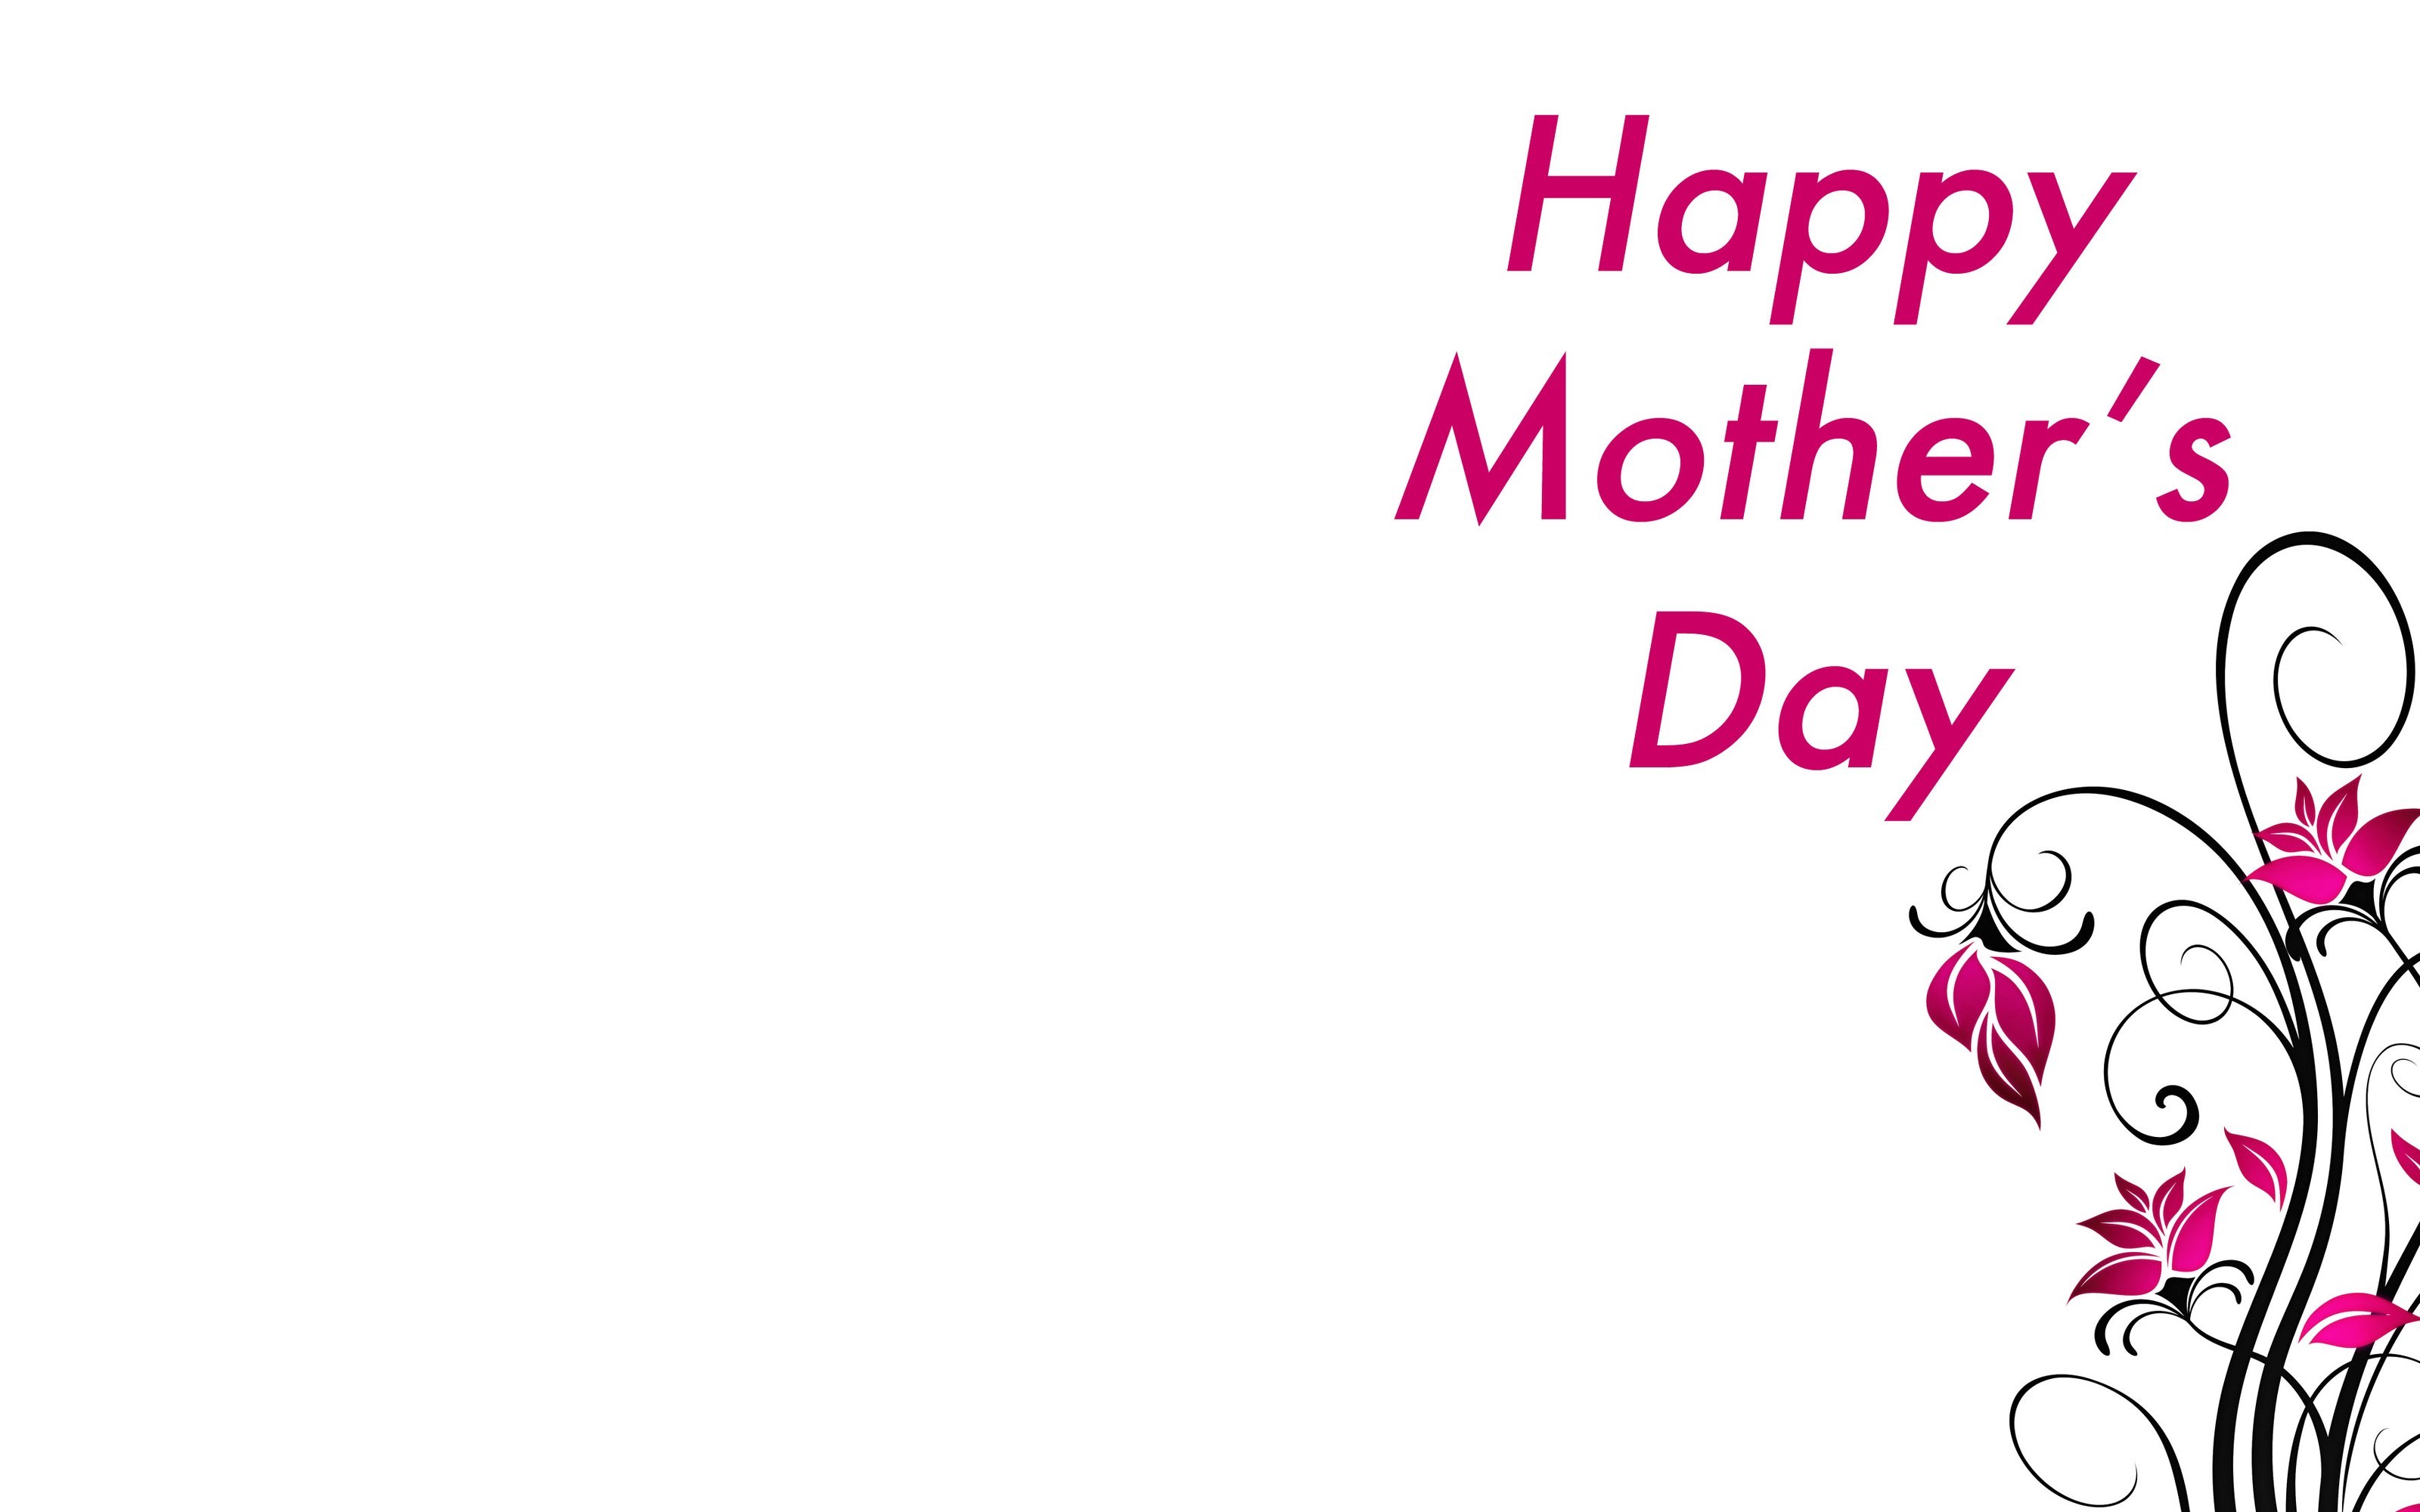 Телефон мамы на английском. Happy mothers Day открытки. Mother's Day открытка. Happy mother's Day картинки. Открытка ко Дню матери на английском.